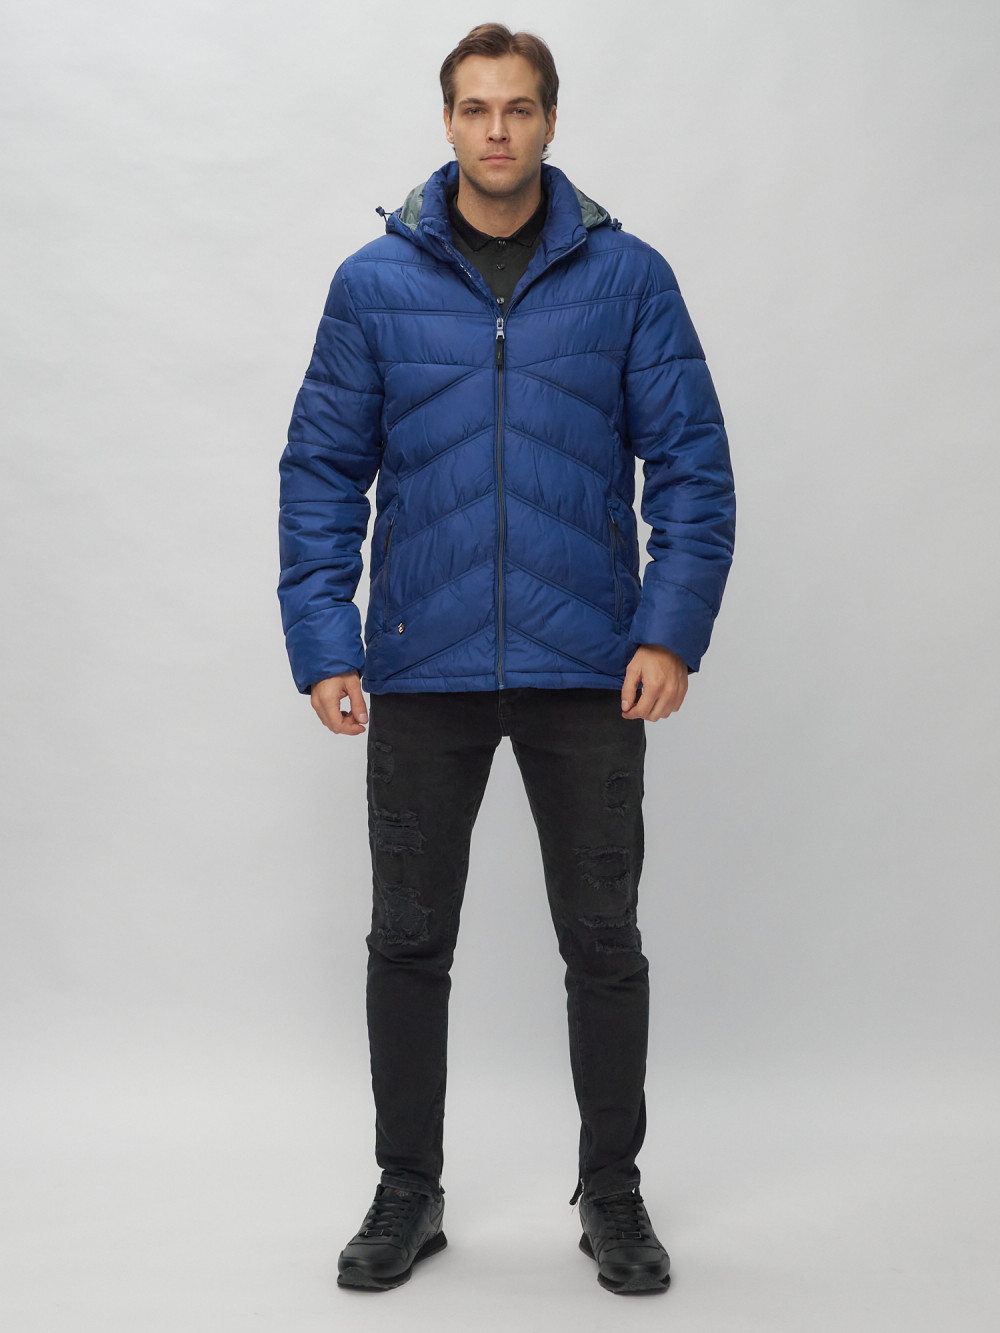 Купить оптом Куртка спортивная мужская с капюшоном синего цвета 62176S в Екатеринбурге